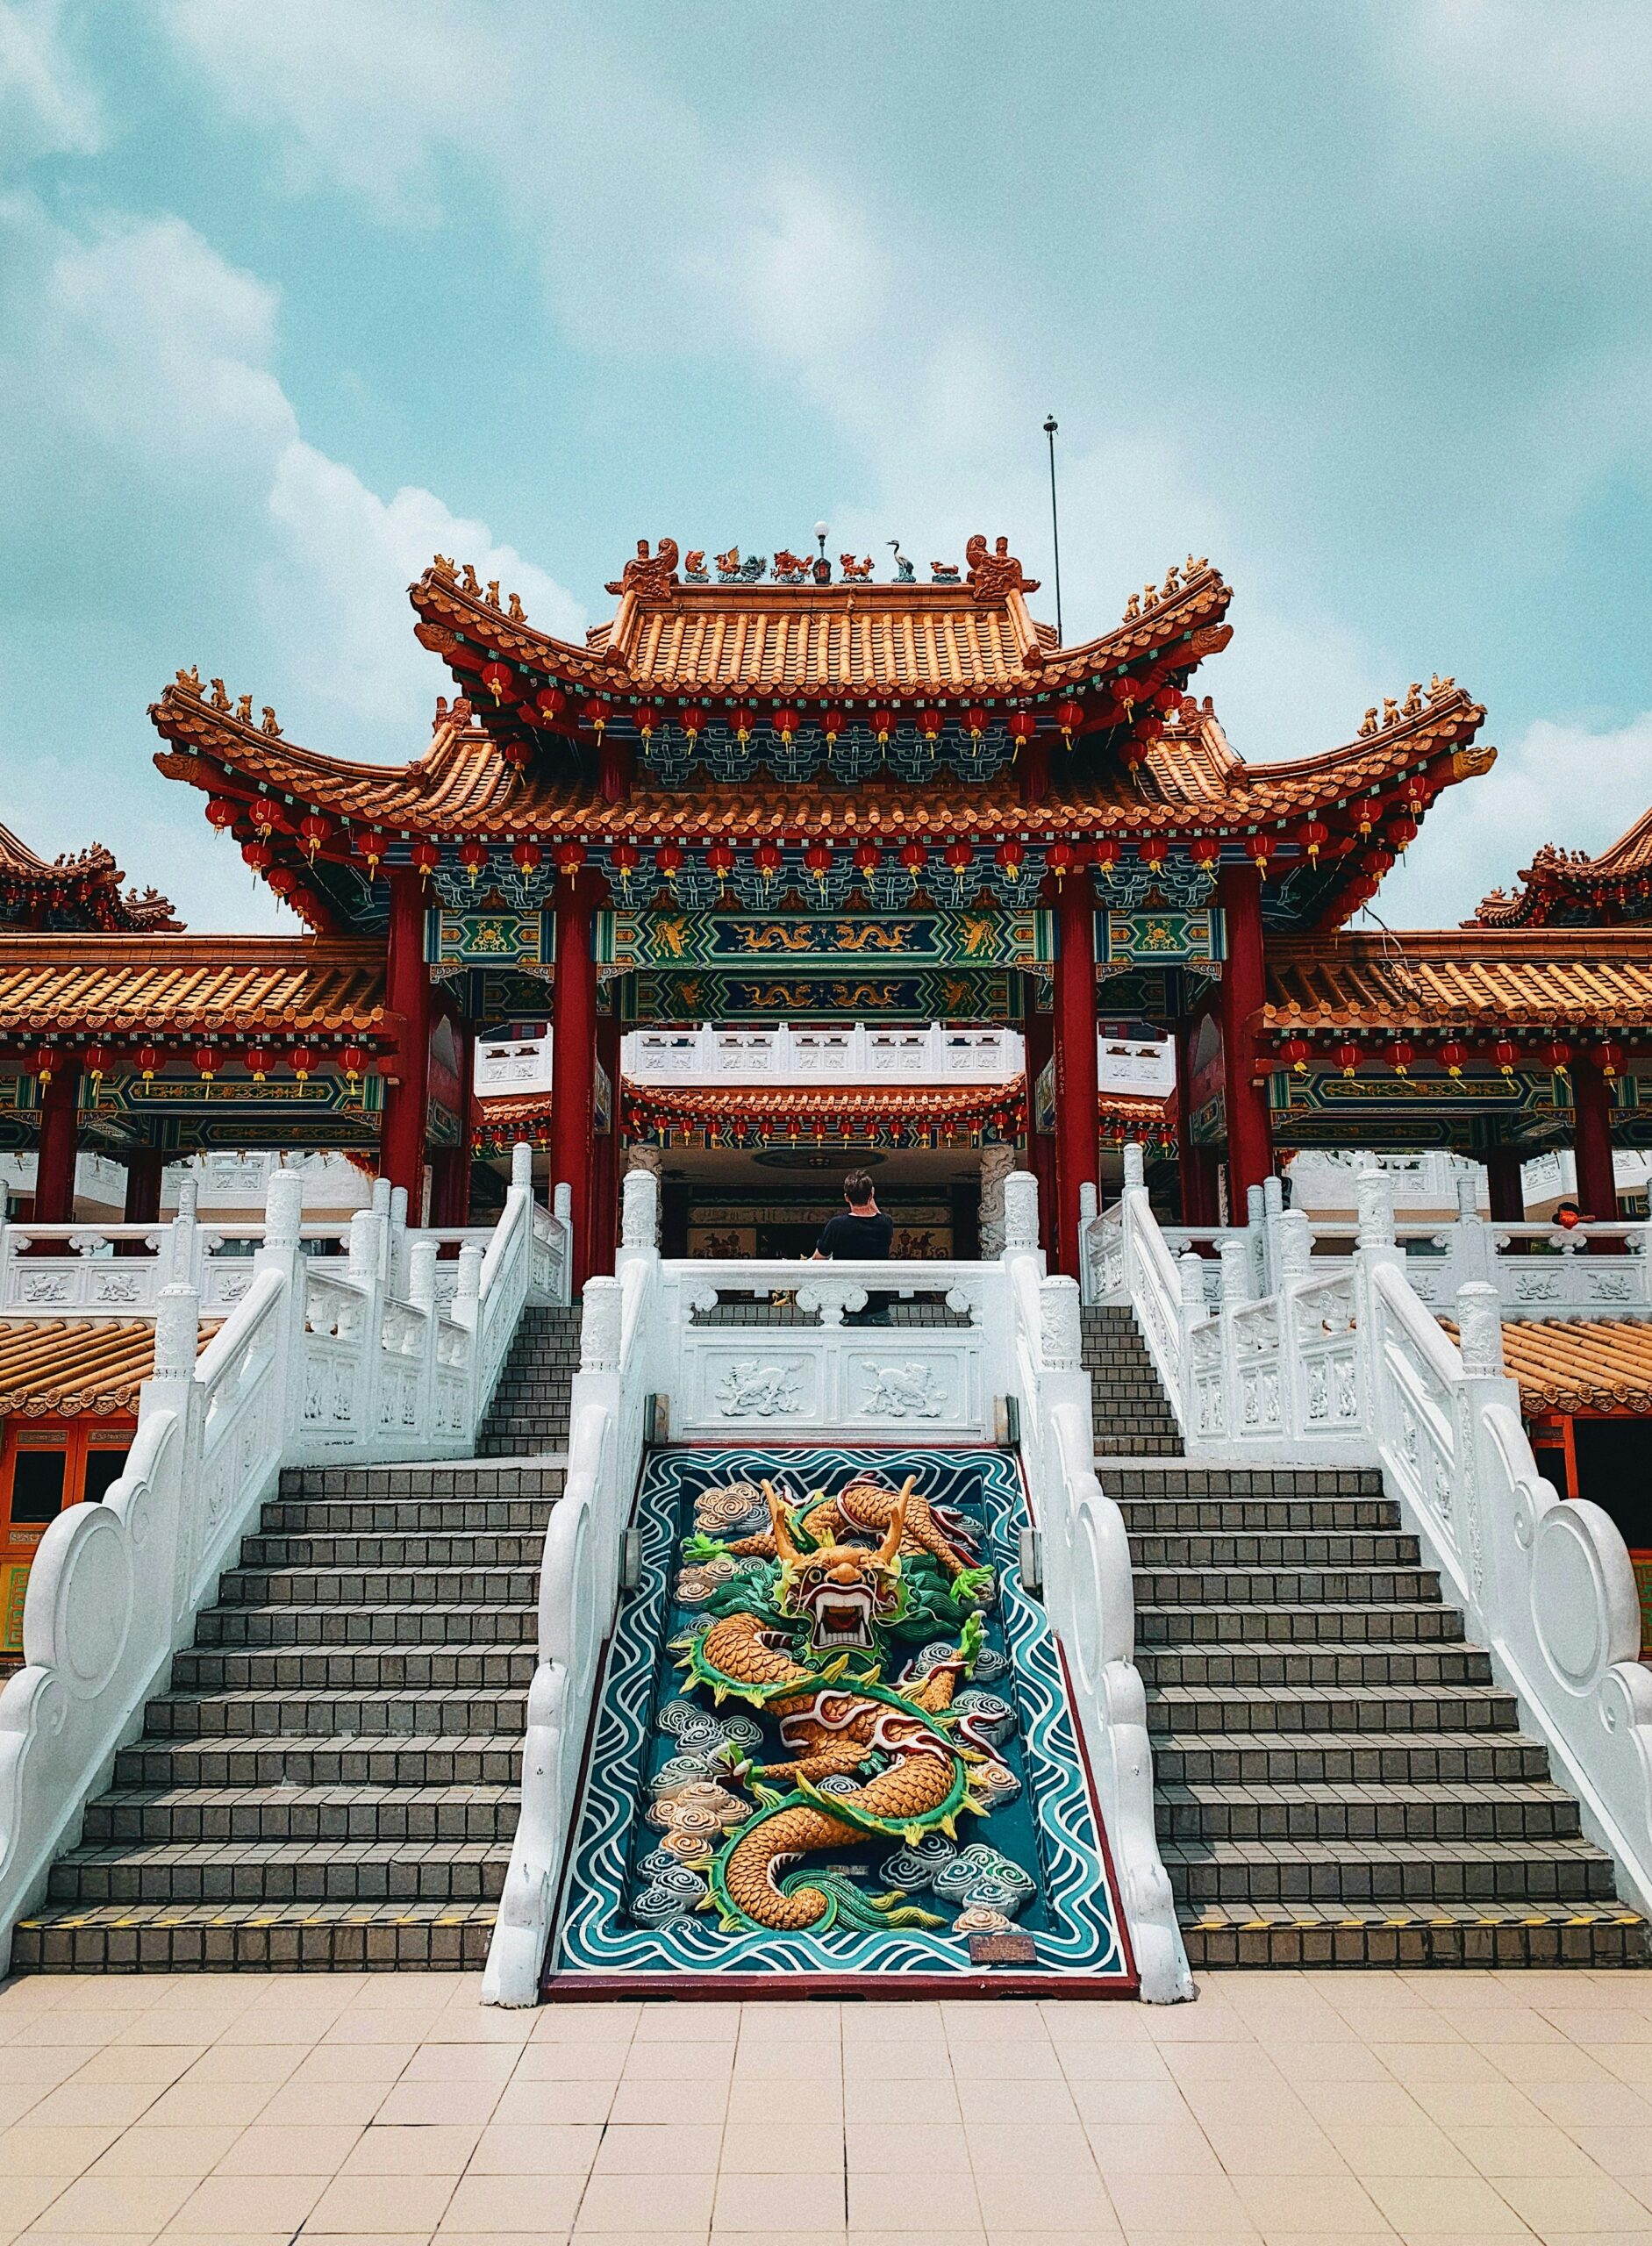 Thean Hou Temple é um templo com muitos andares, com uma arquitetura chinesa que revela como Kuala Lumpur é uma cidade multicultural.